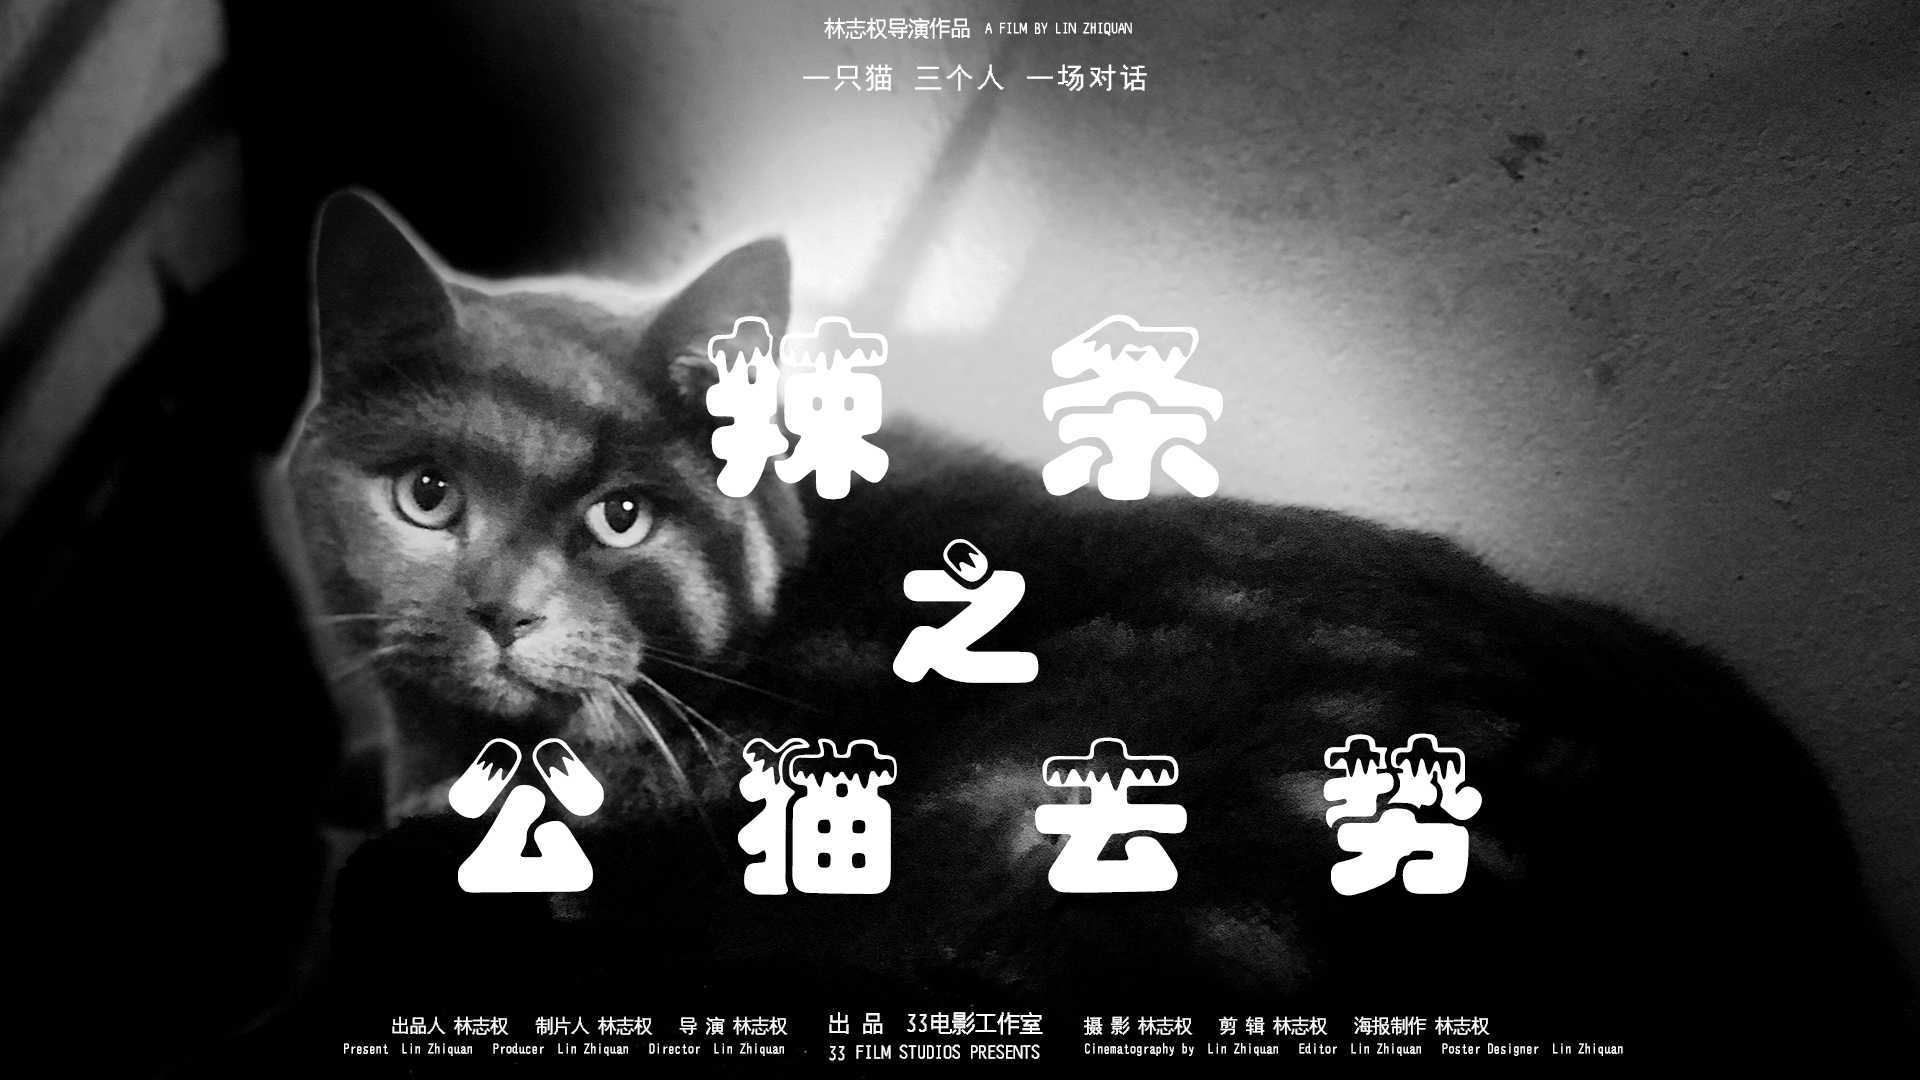 纪录短片《辣条之公猫去势》林志权导演作品